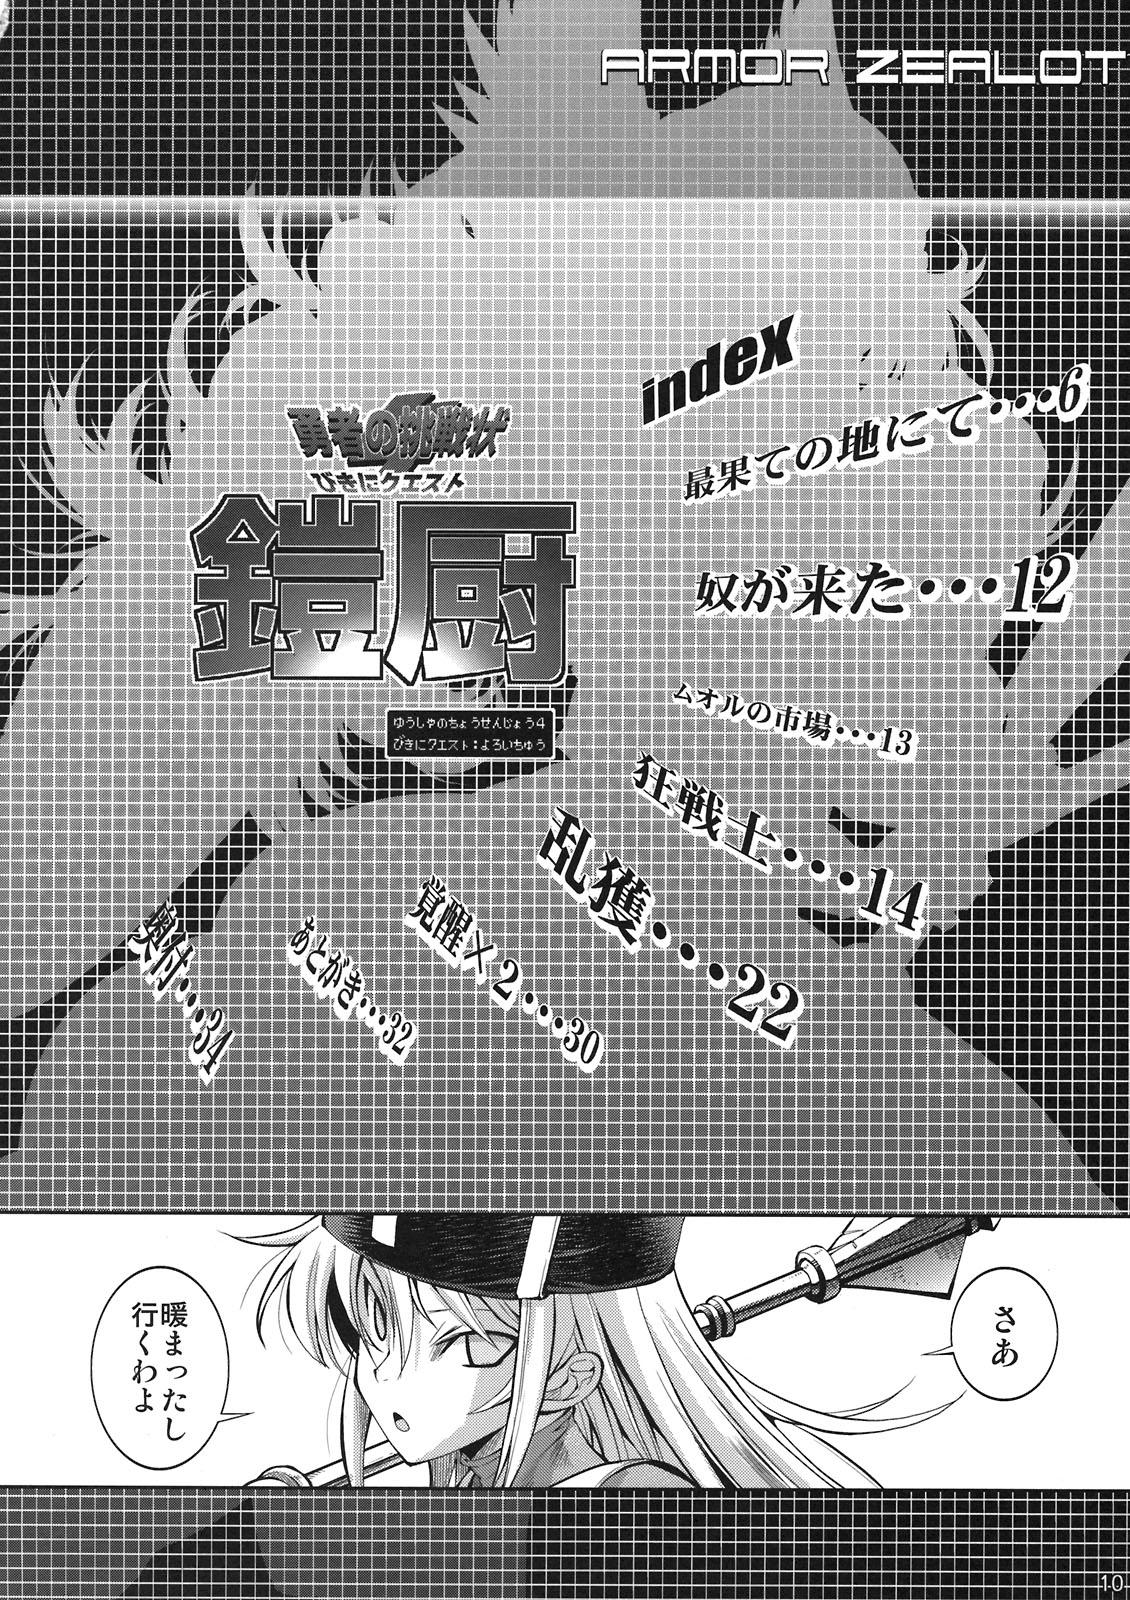 Spying Yuusha no Chousenjou 4 Yoroichuu - Dragon quest iii Mamada - Page 7